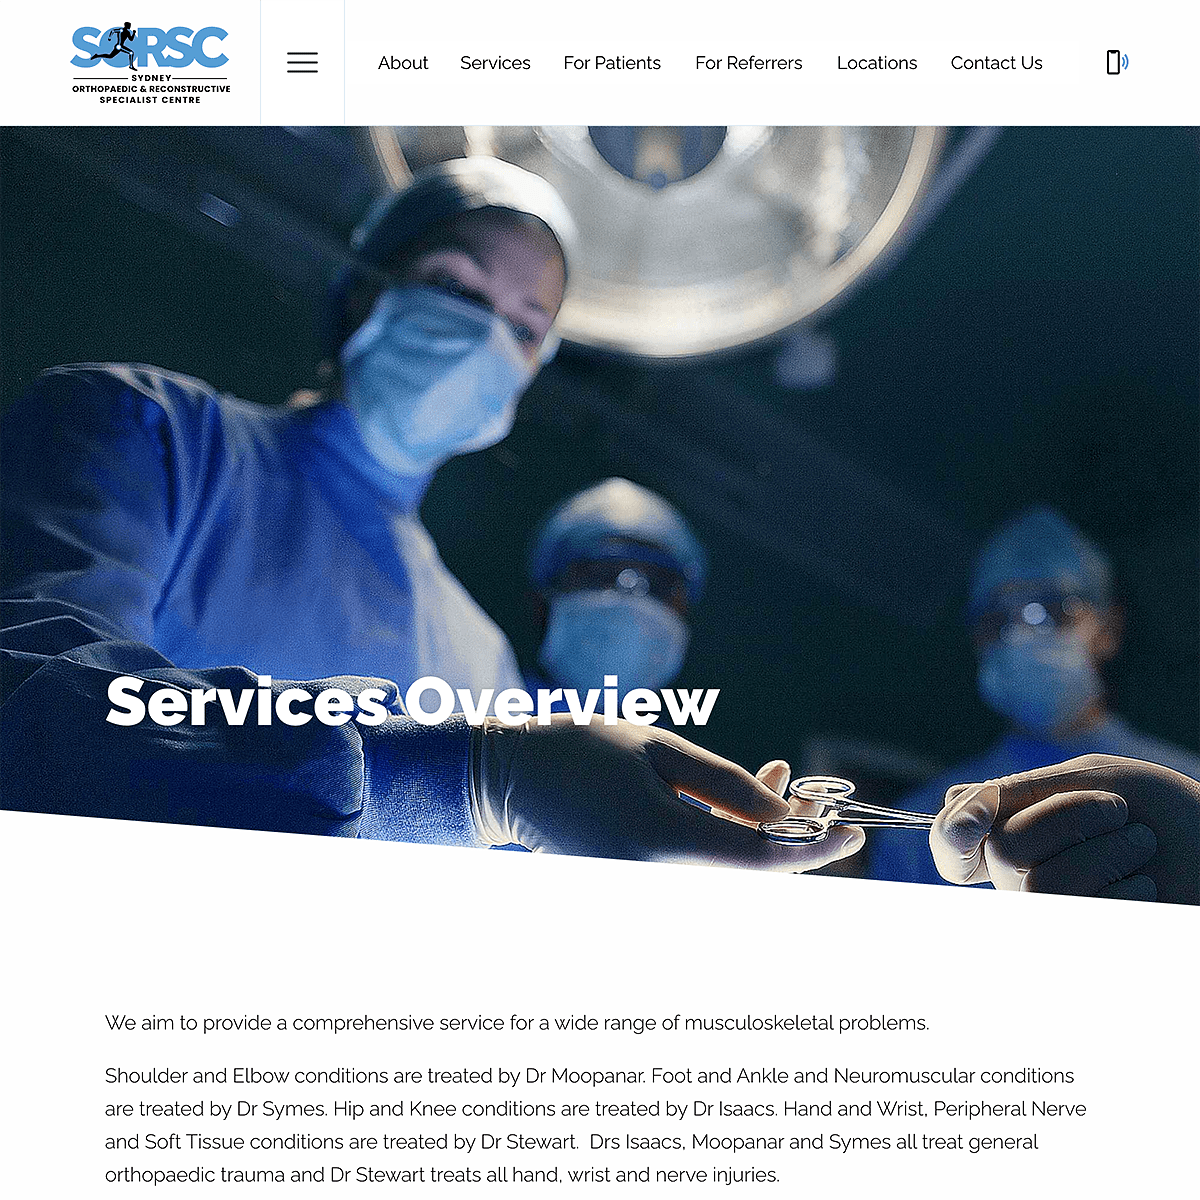 SORSC - Services